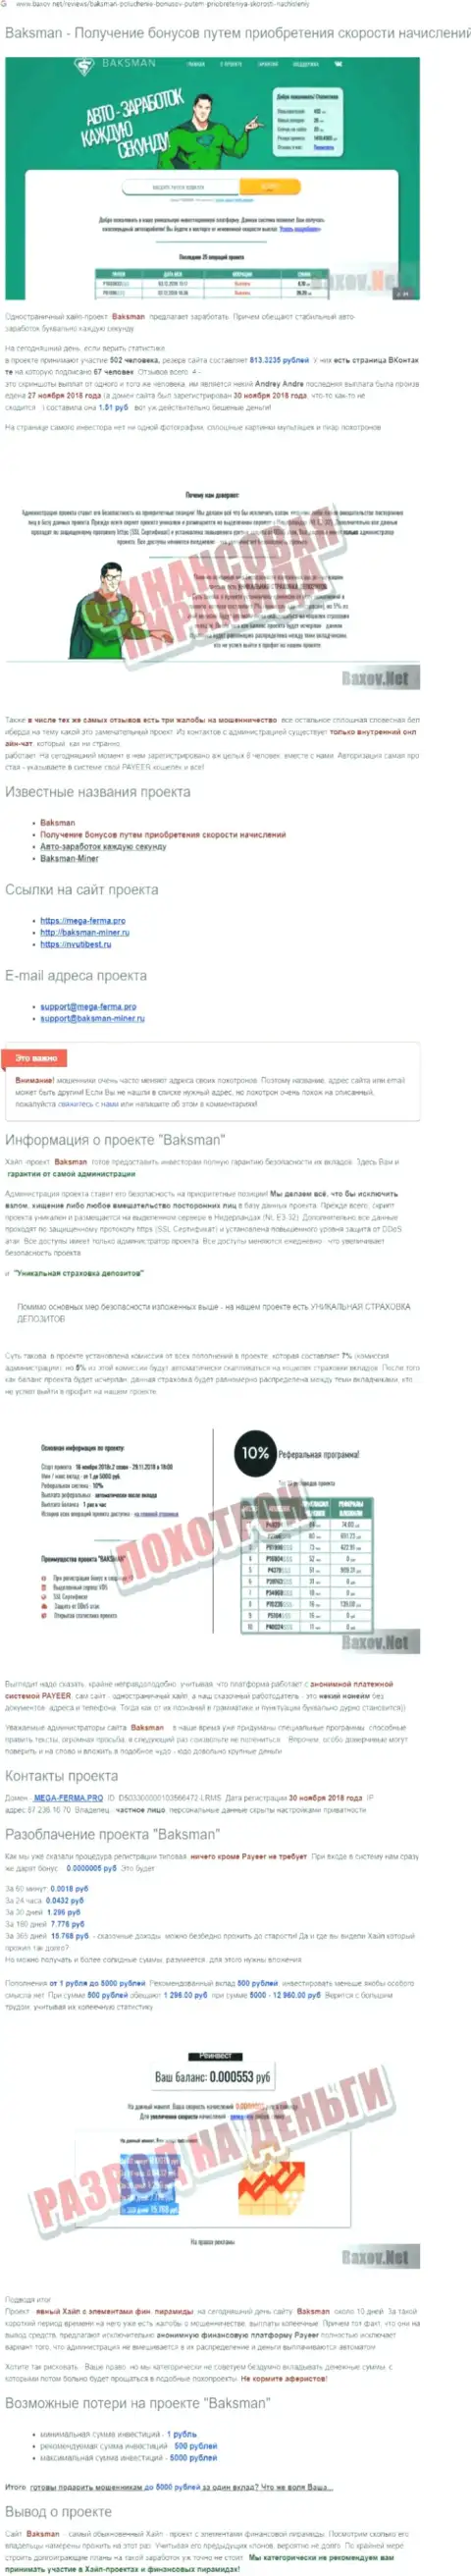 Предложения совместной работы от BaksMan Org, вся правдивая информация о указанной организации (обзор проделок)